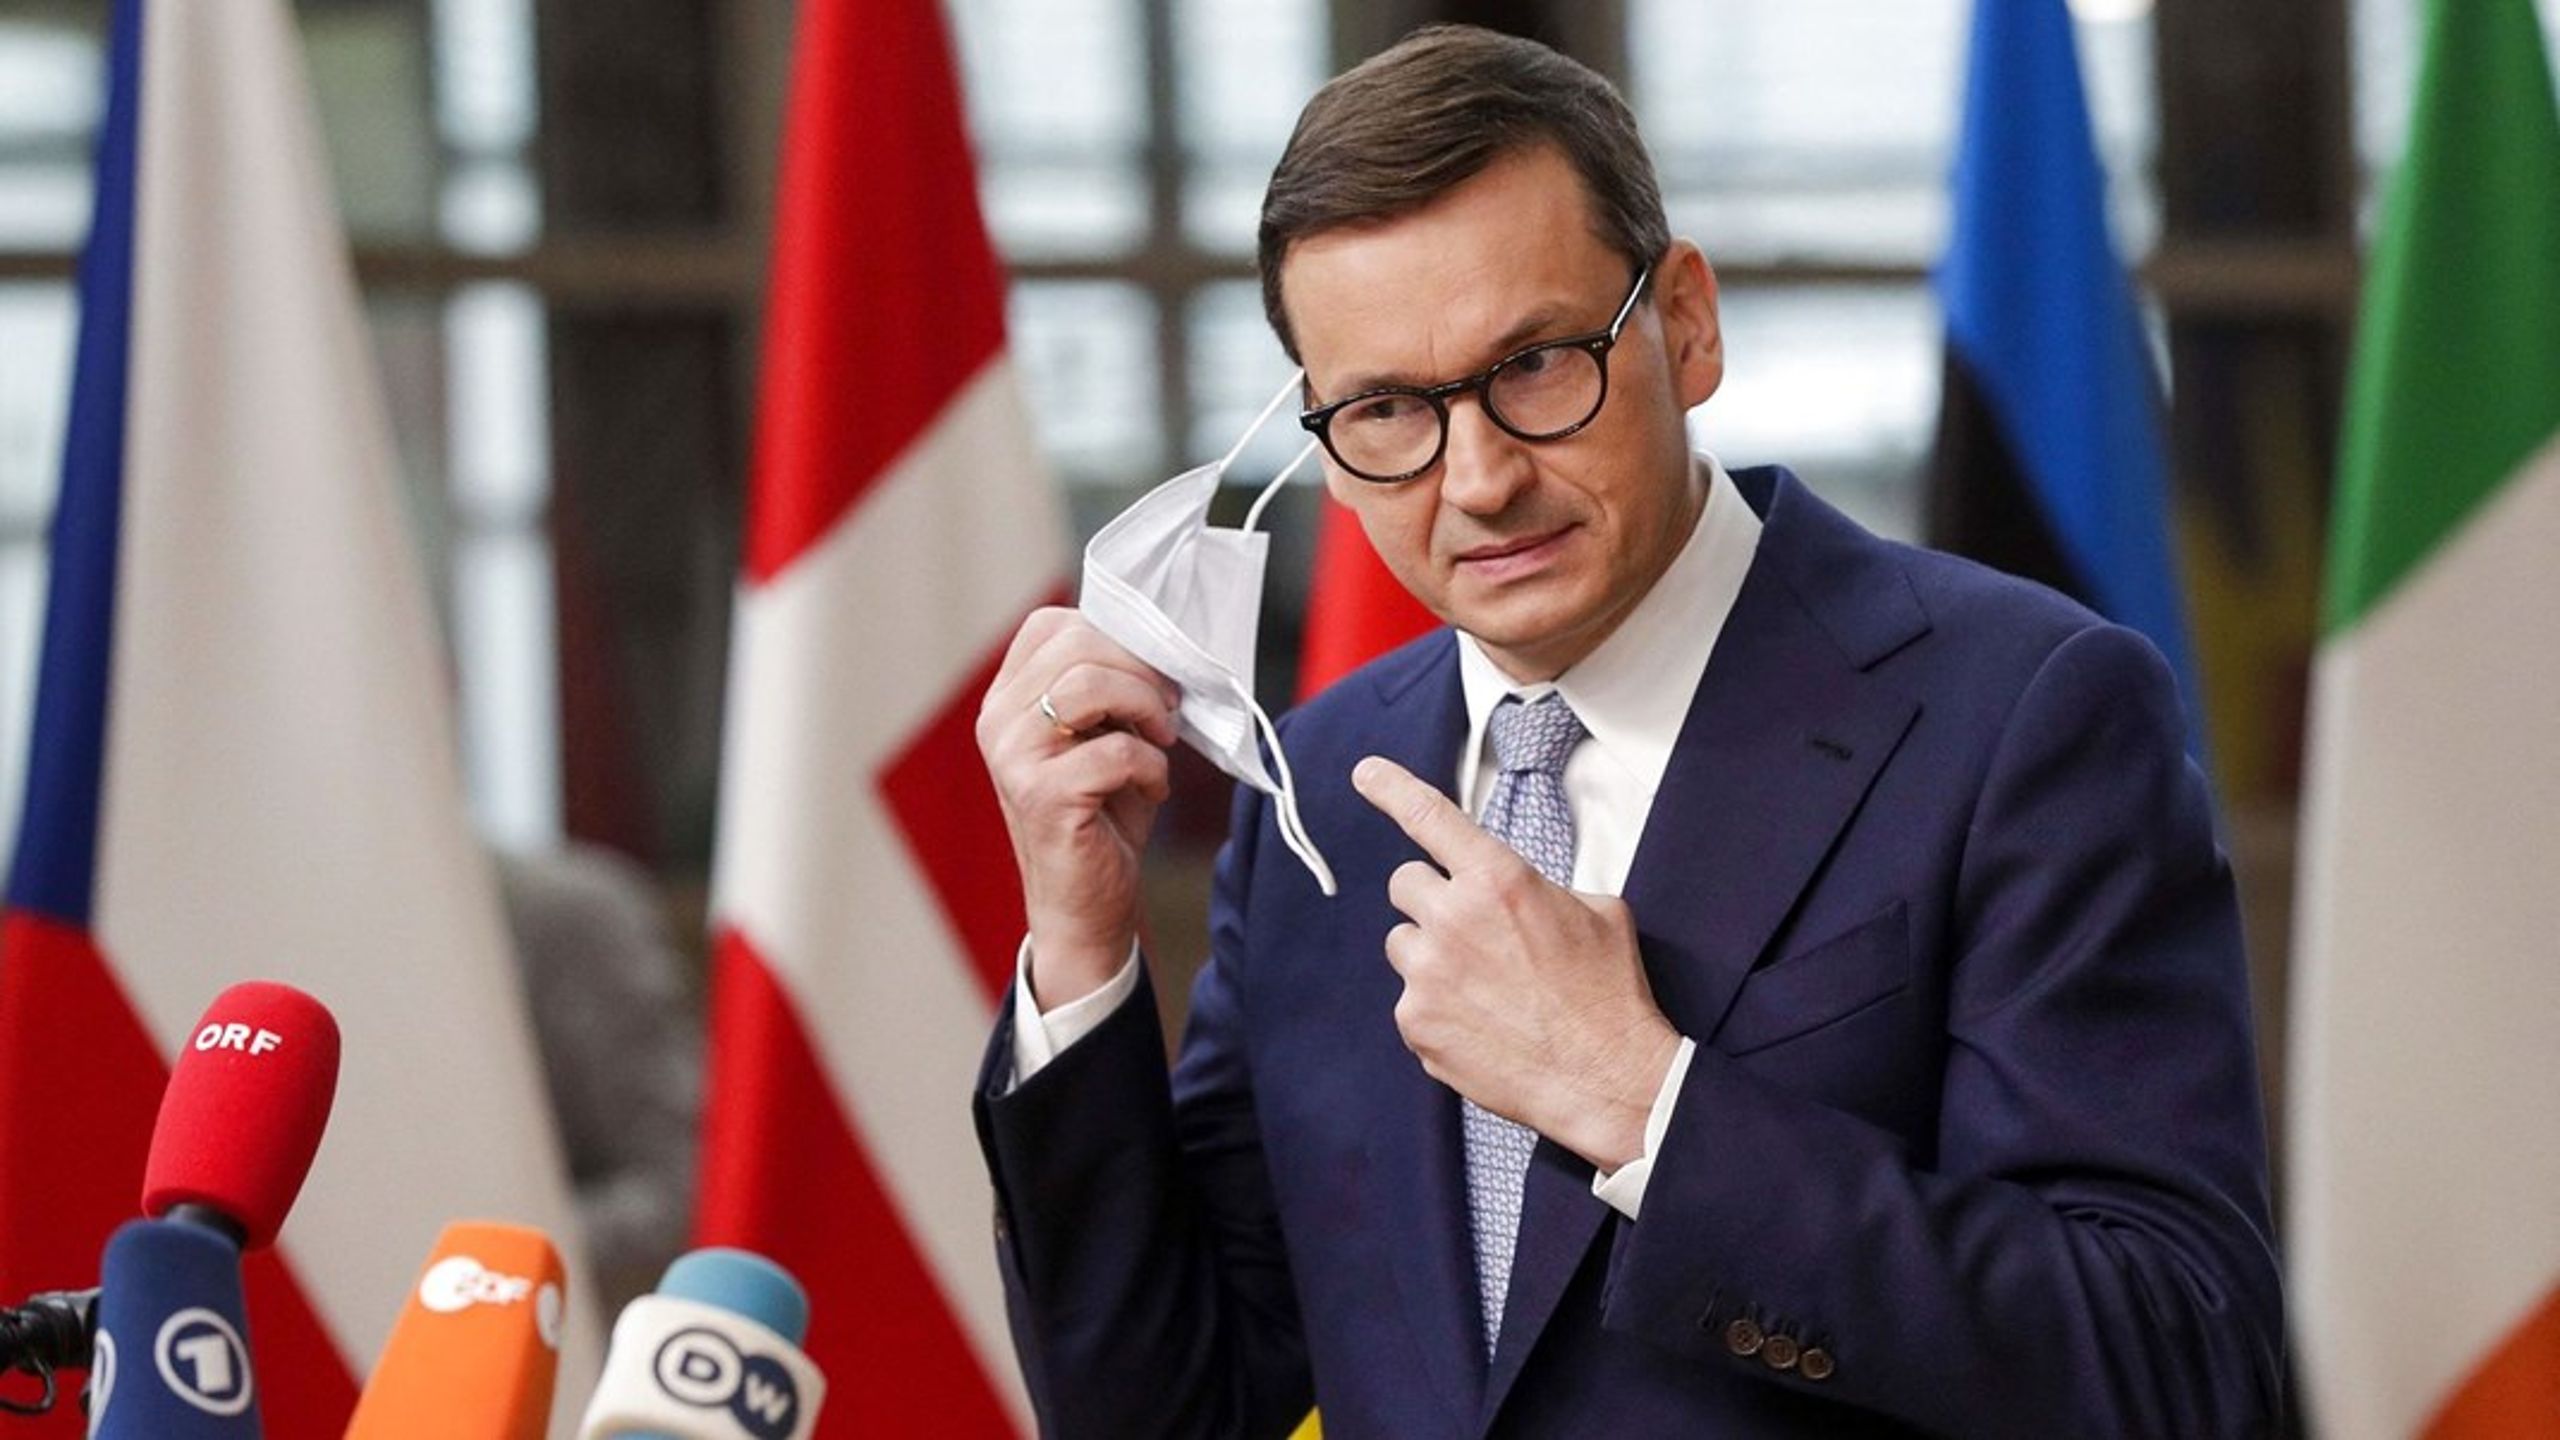 Den polske premierminister kom under pres fra sine EU-kolleger ved et topmøde torsdag.